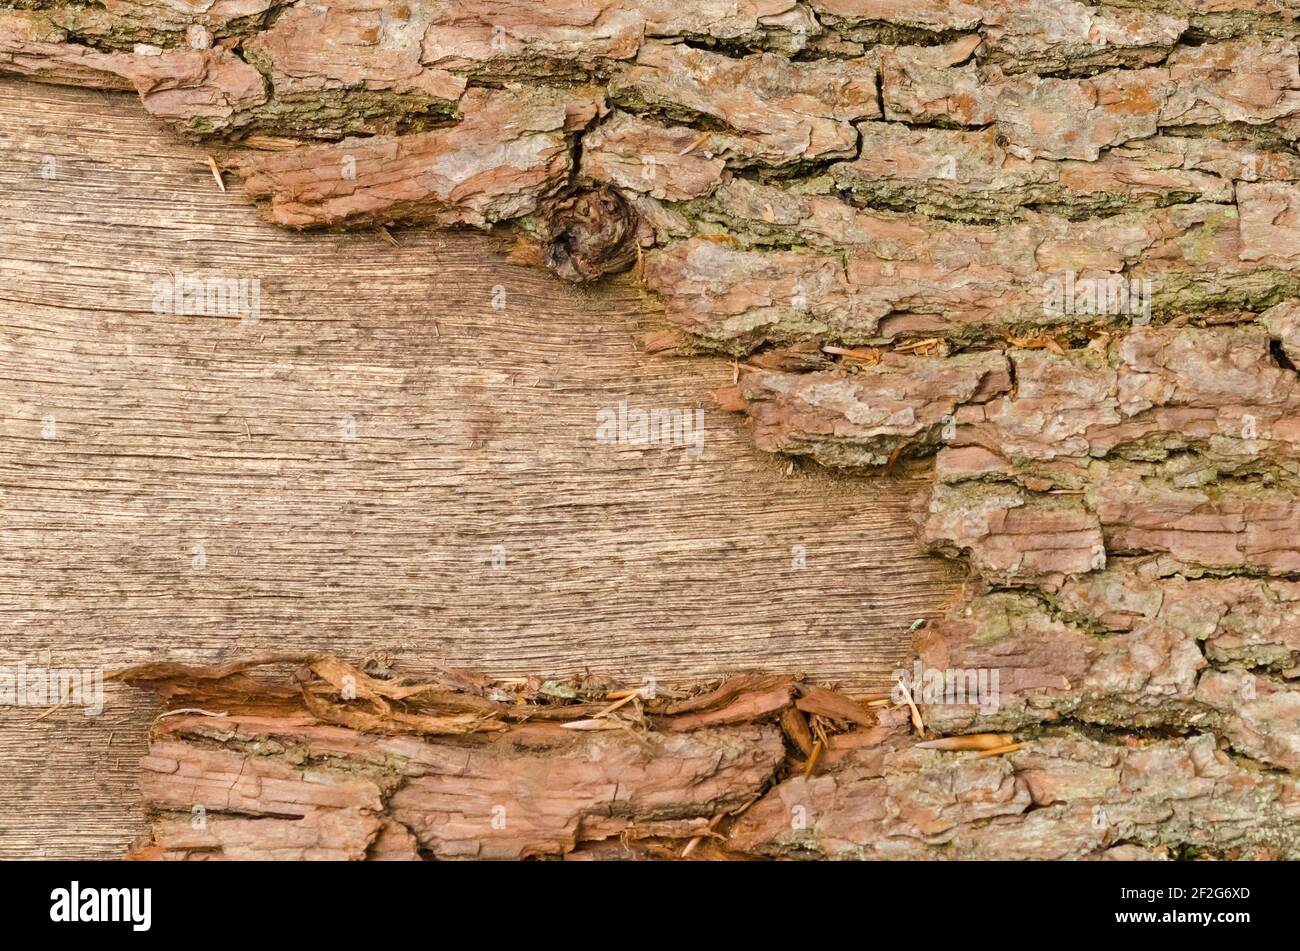 Abstrakte Nahaufnahme von rauer Oberfläche und Struktur von Baumrinde, altes Vintage-Muster, grunge Holzhintergrund, Deutschland, Europa Stockfoto